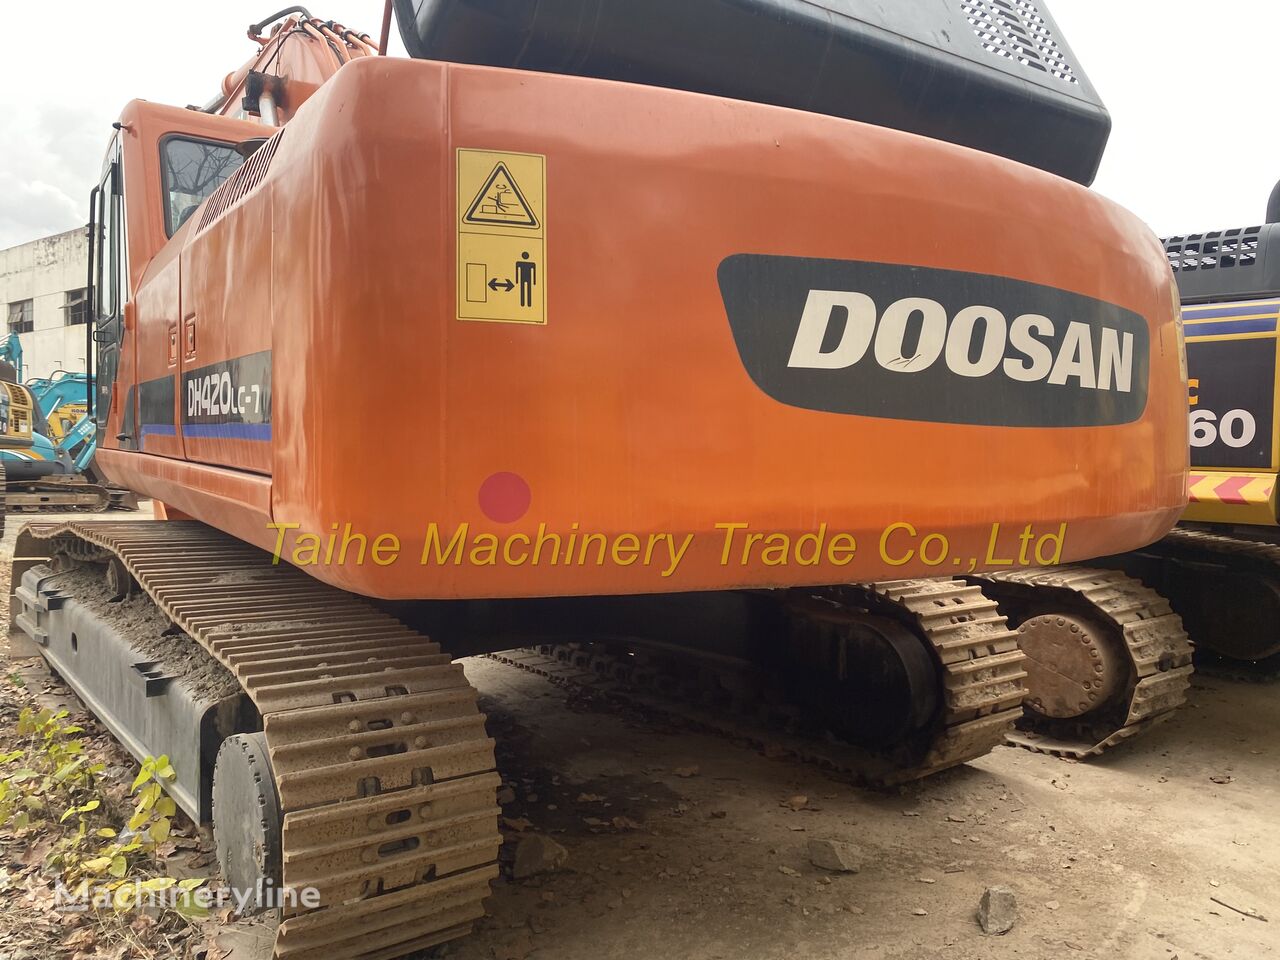 Doosan DH420-7 tracked excavator